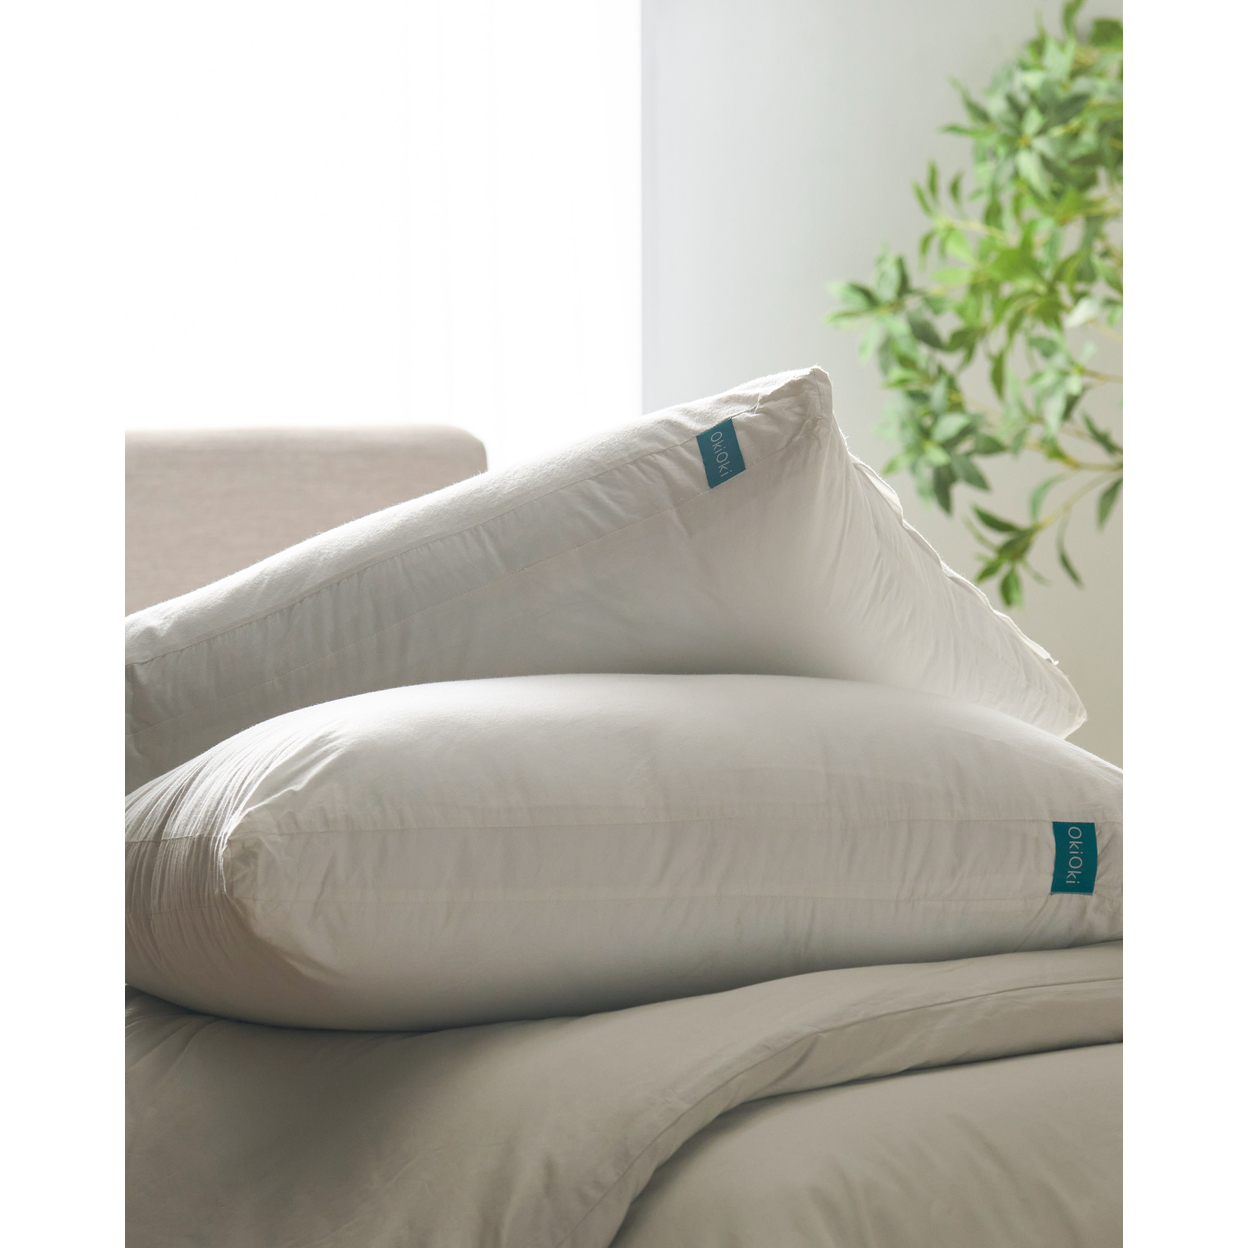 OkiOki Cotton Pillow, White - Medium(set Of 2)